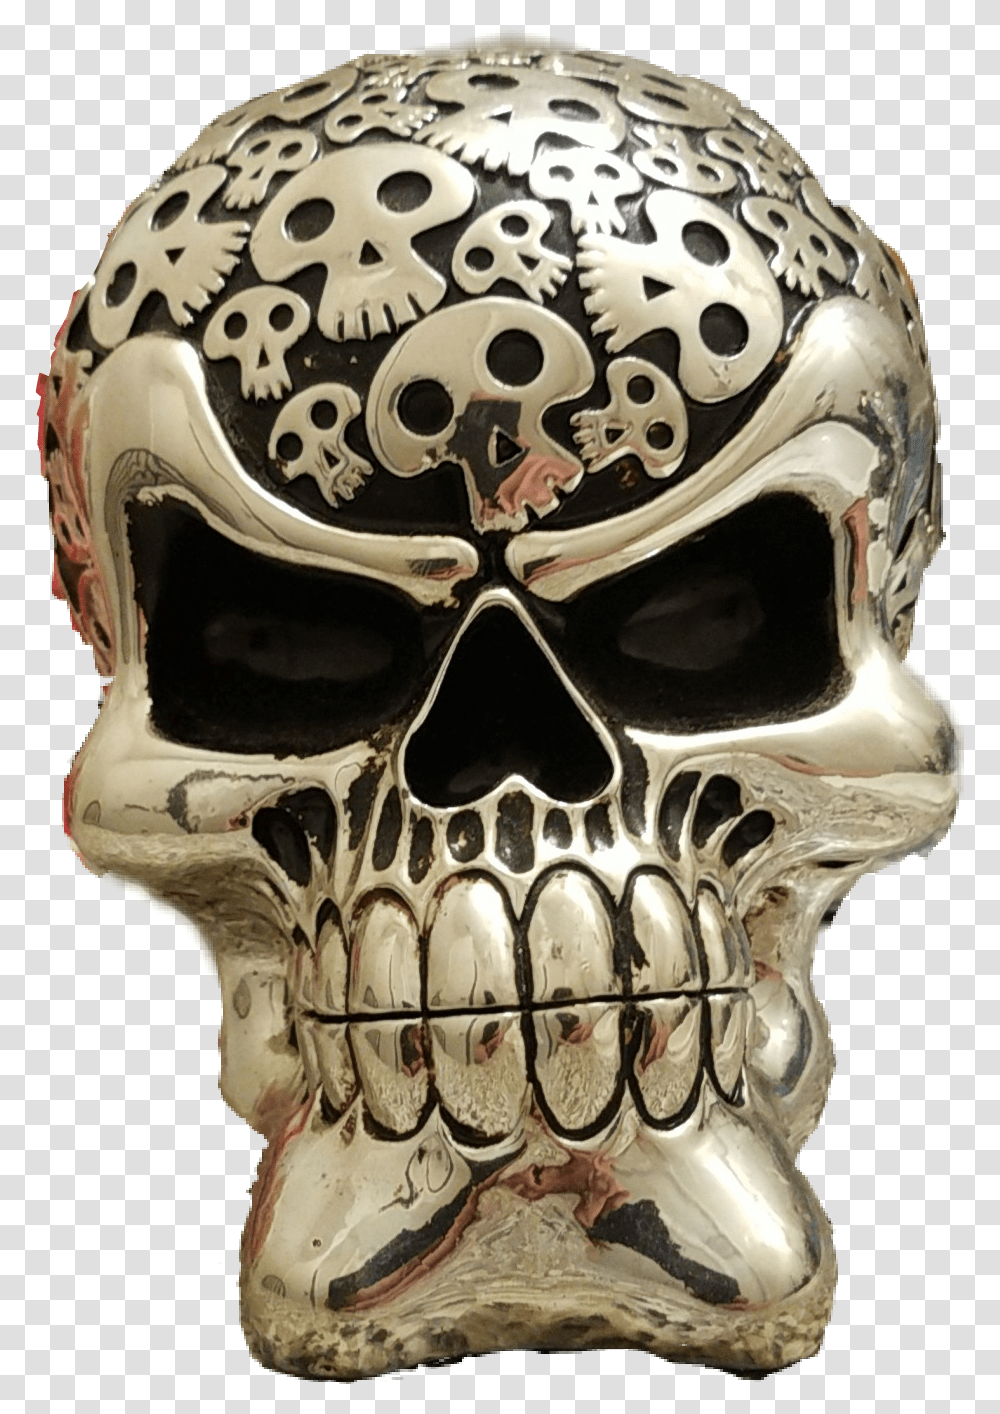 Picsart Sticker Mysticker Skull Shiny Silver Skull, Helmet, Apparel, Jaw Transparent Png